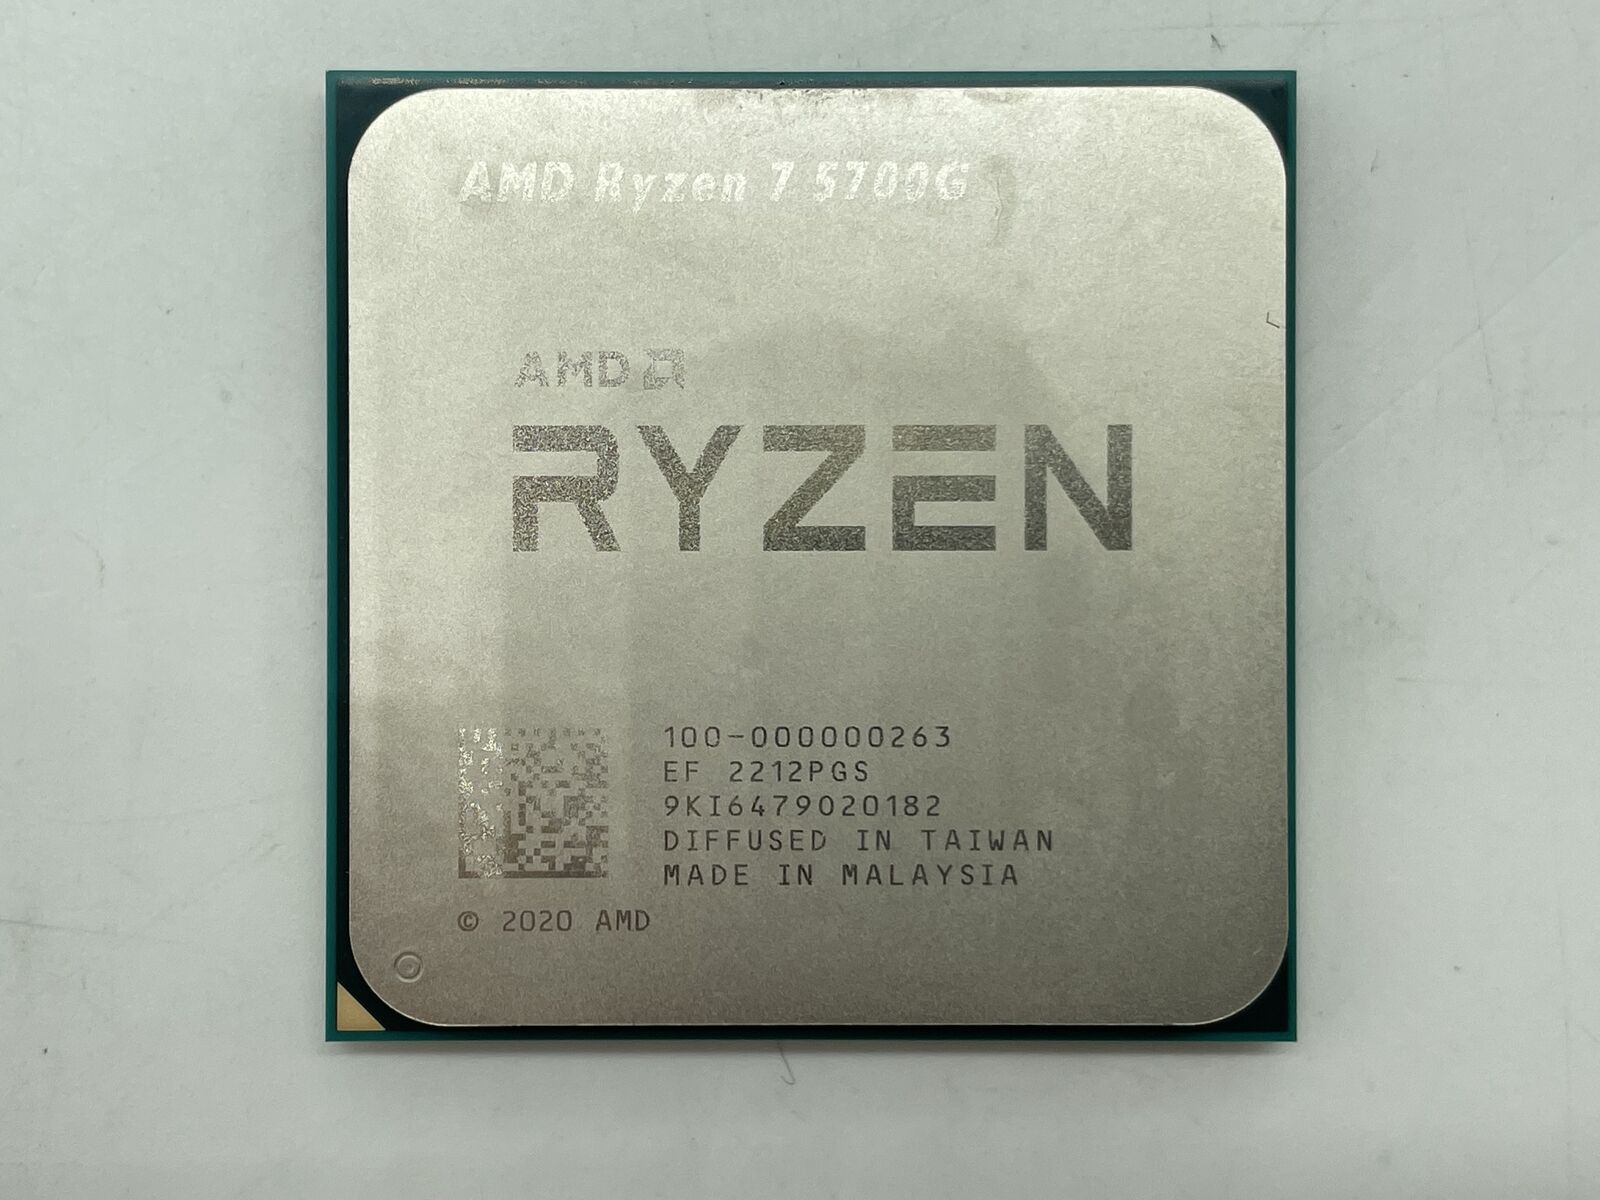 AMD Ryzen 7 5700G AM4 3.8GHz 8-Core 16-Thread Processor Used